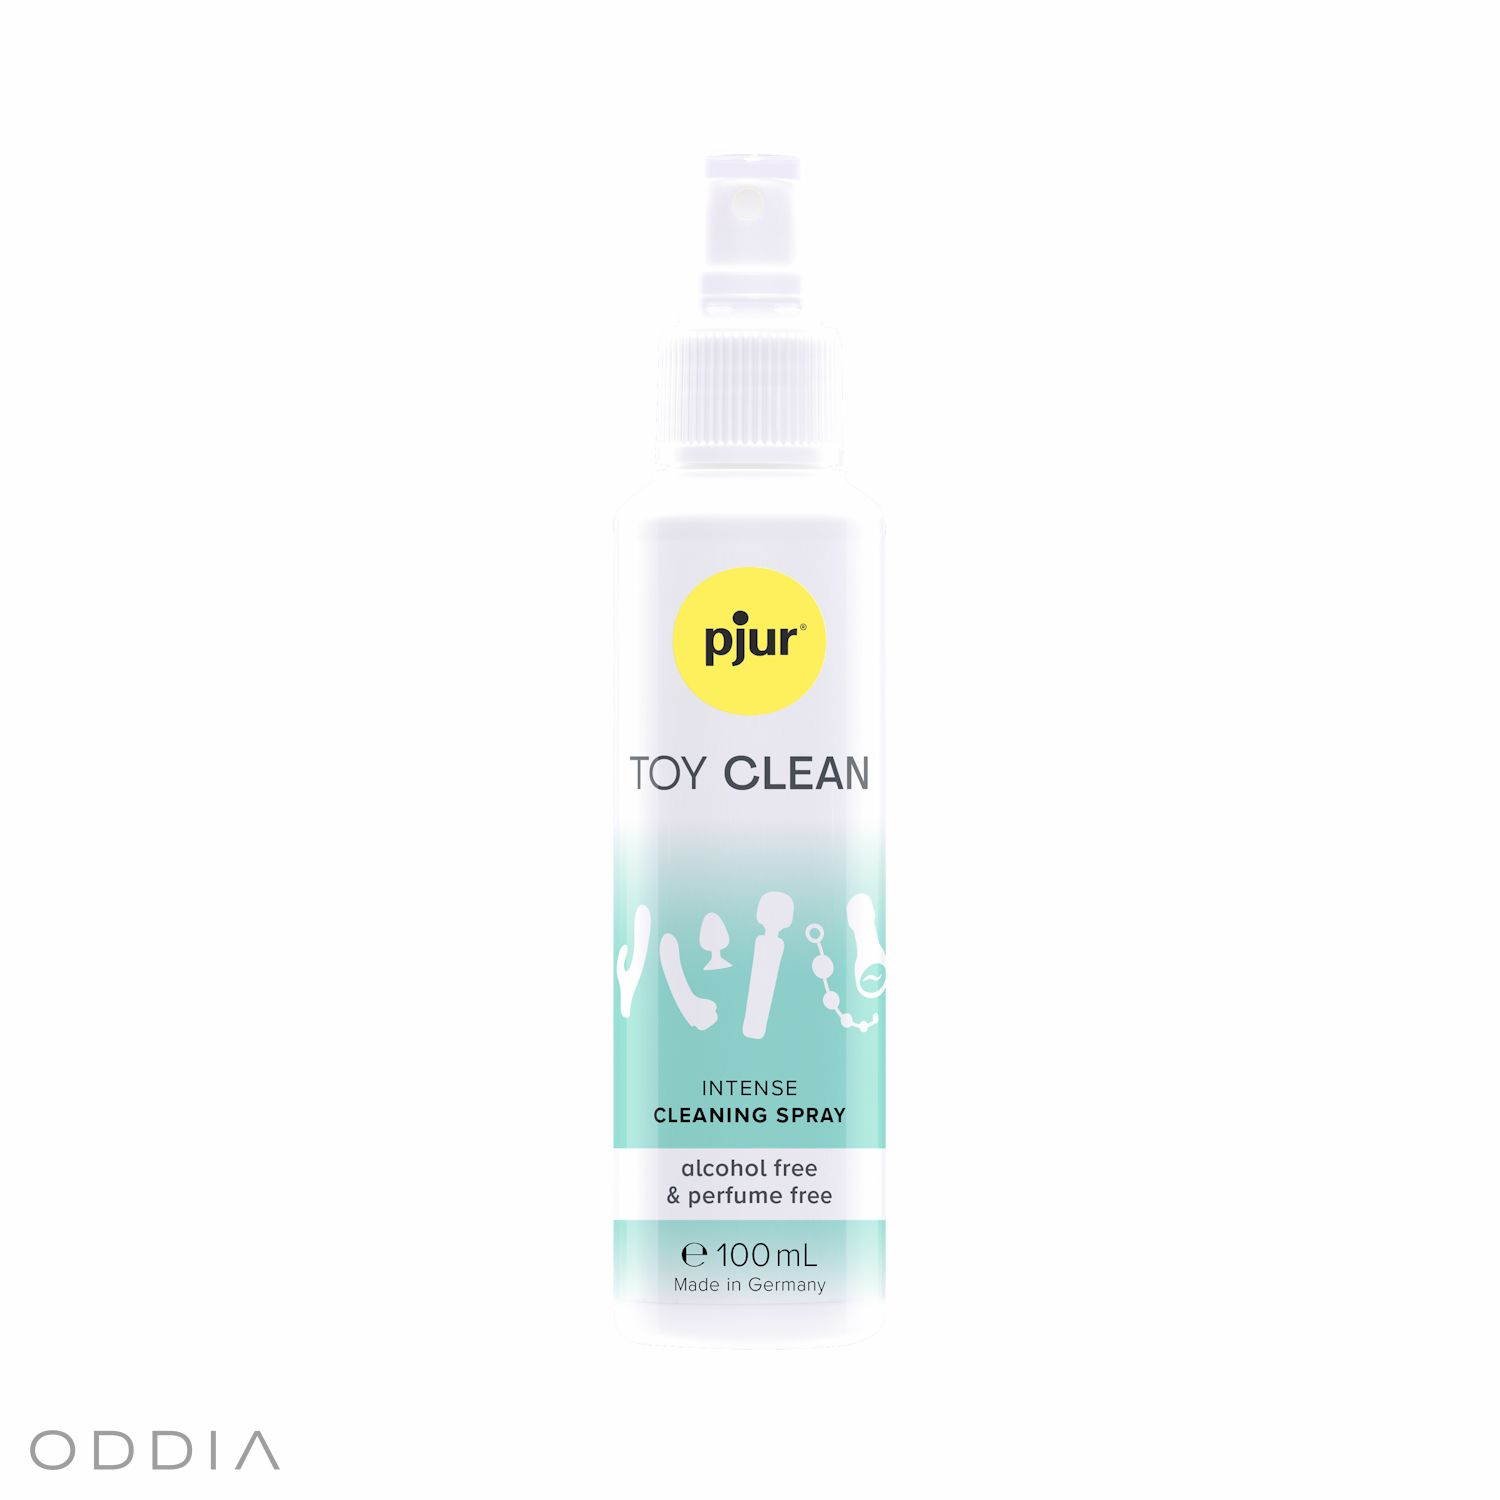 Bouteille avec vaporisateur du produit Pjur Toy Clean pour nettoyer les accessoires érotiques et BDSM